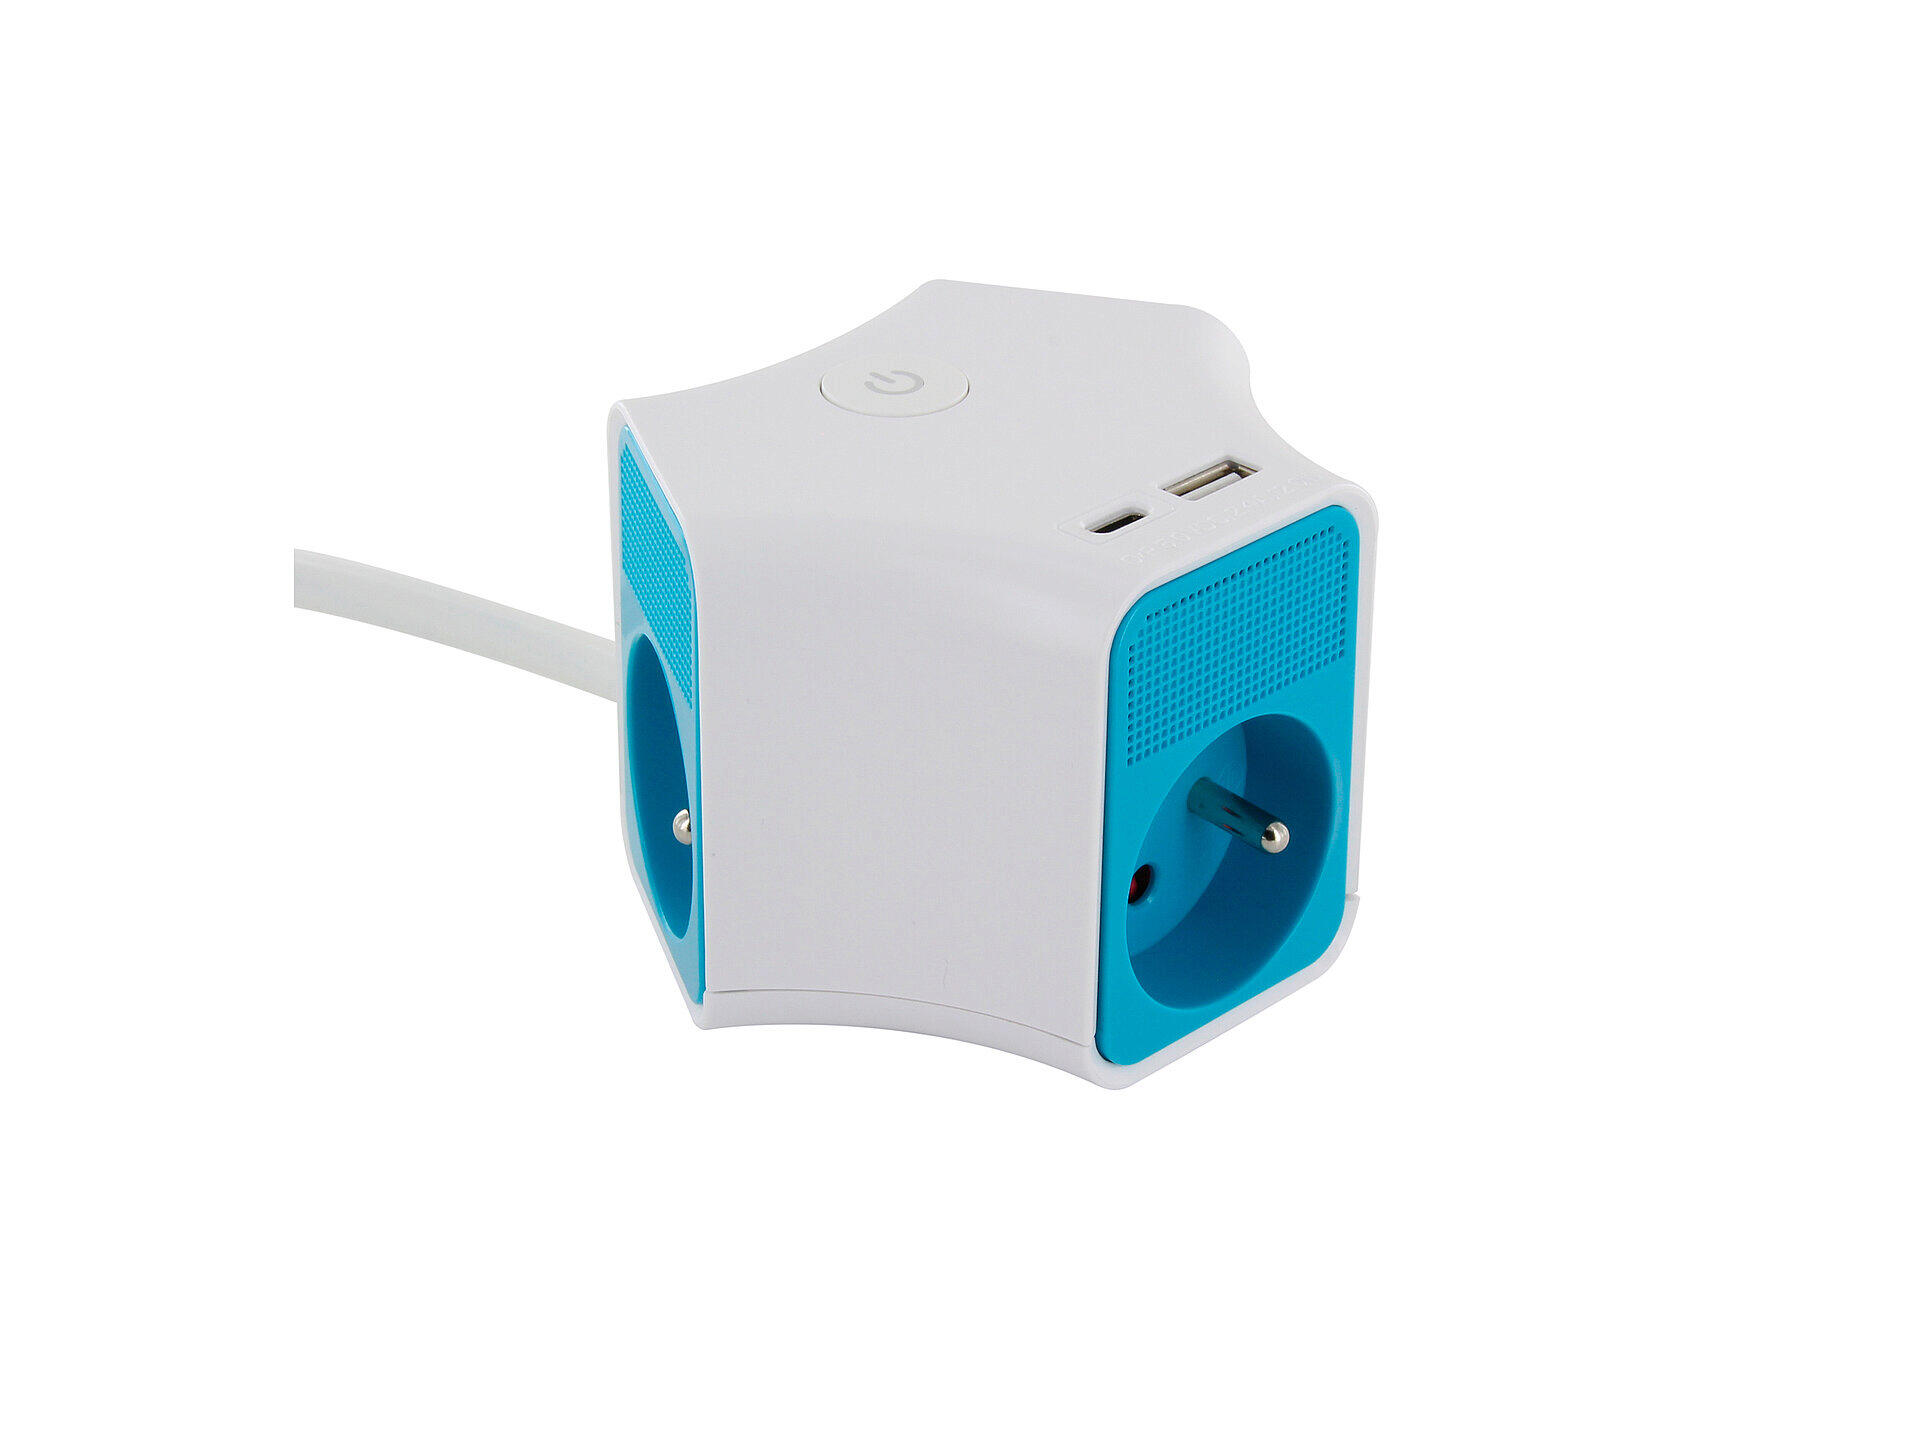 Chacon Powercube bloc multiprise 3x + 2x USB et câble 1,5m blanc